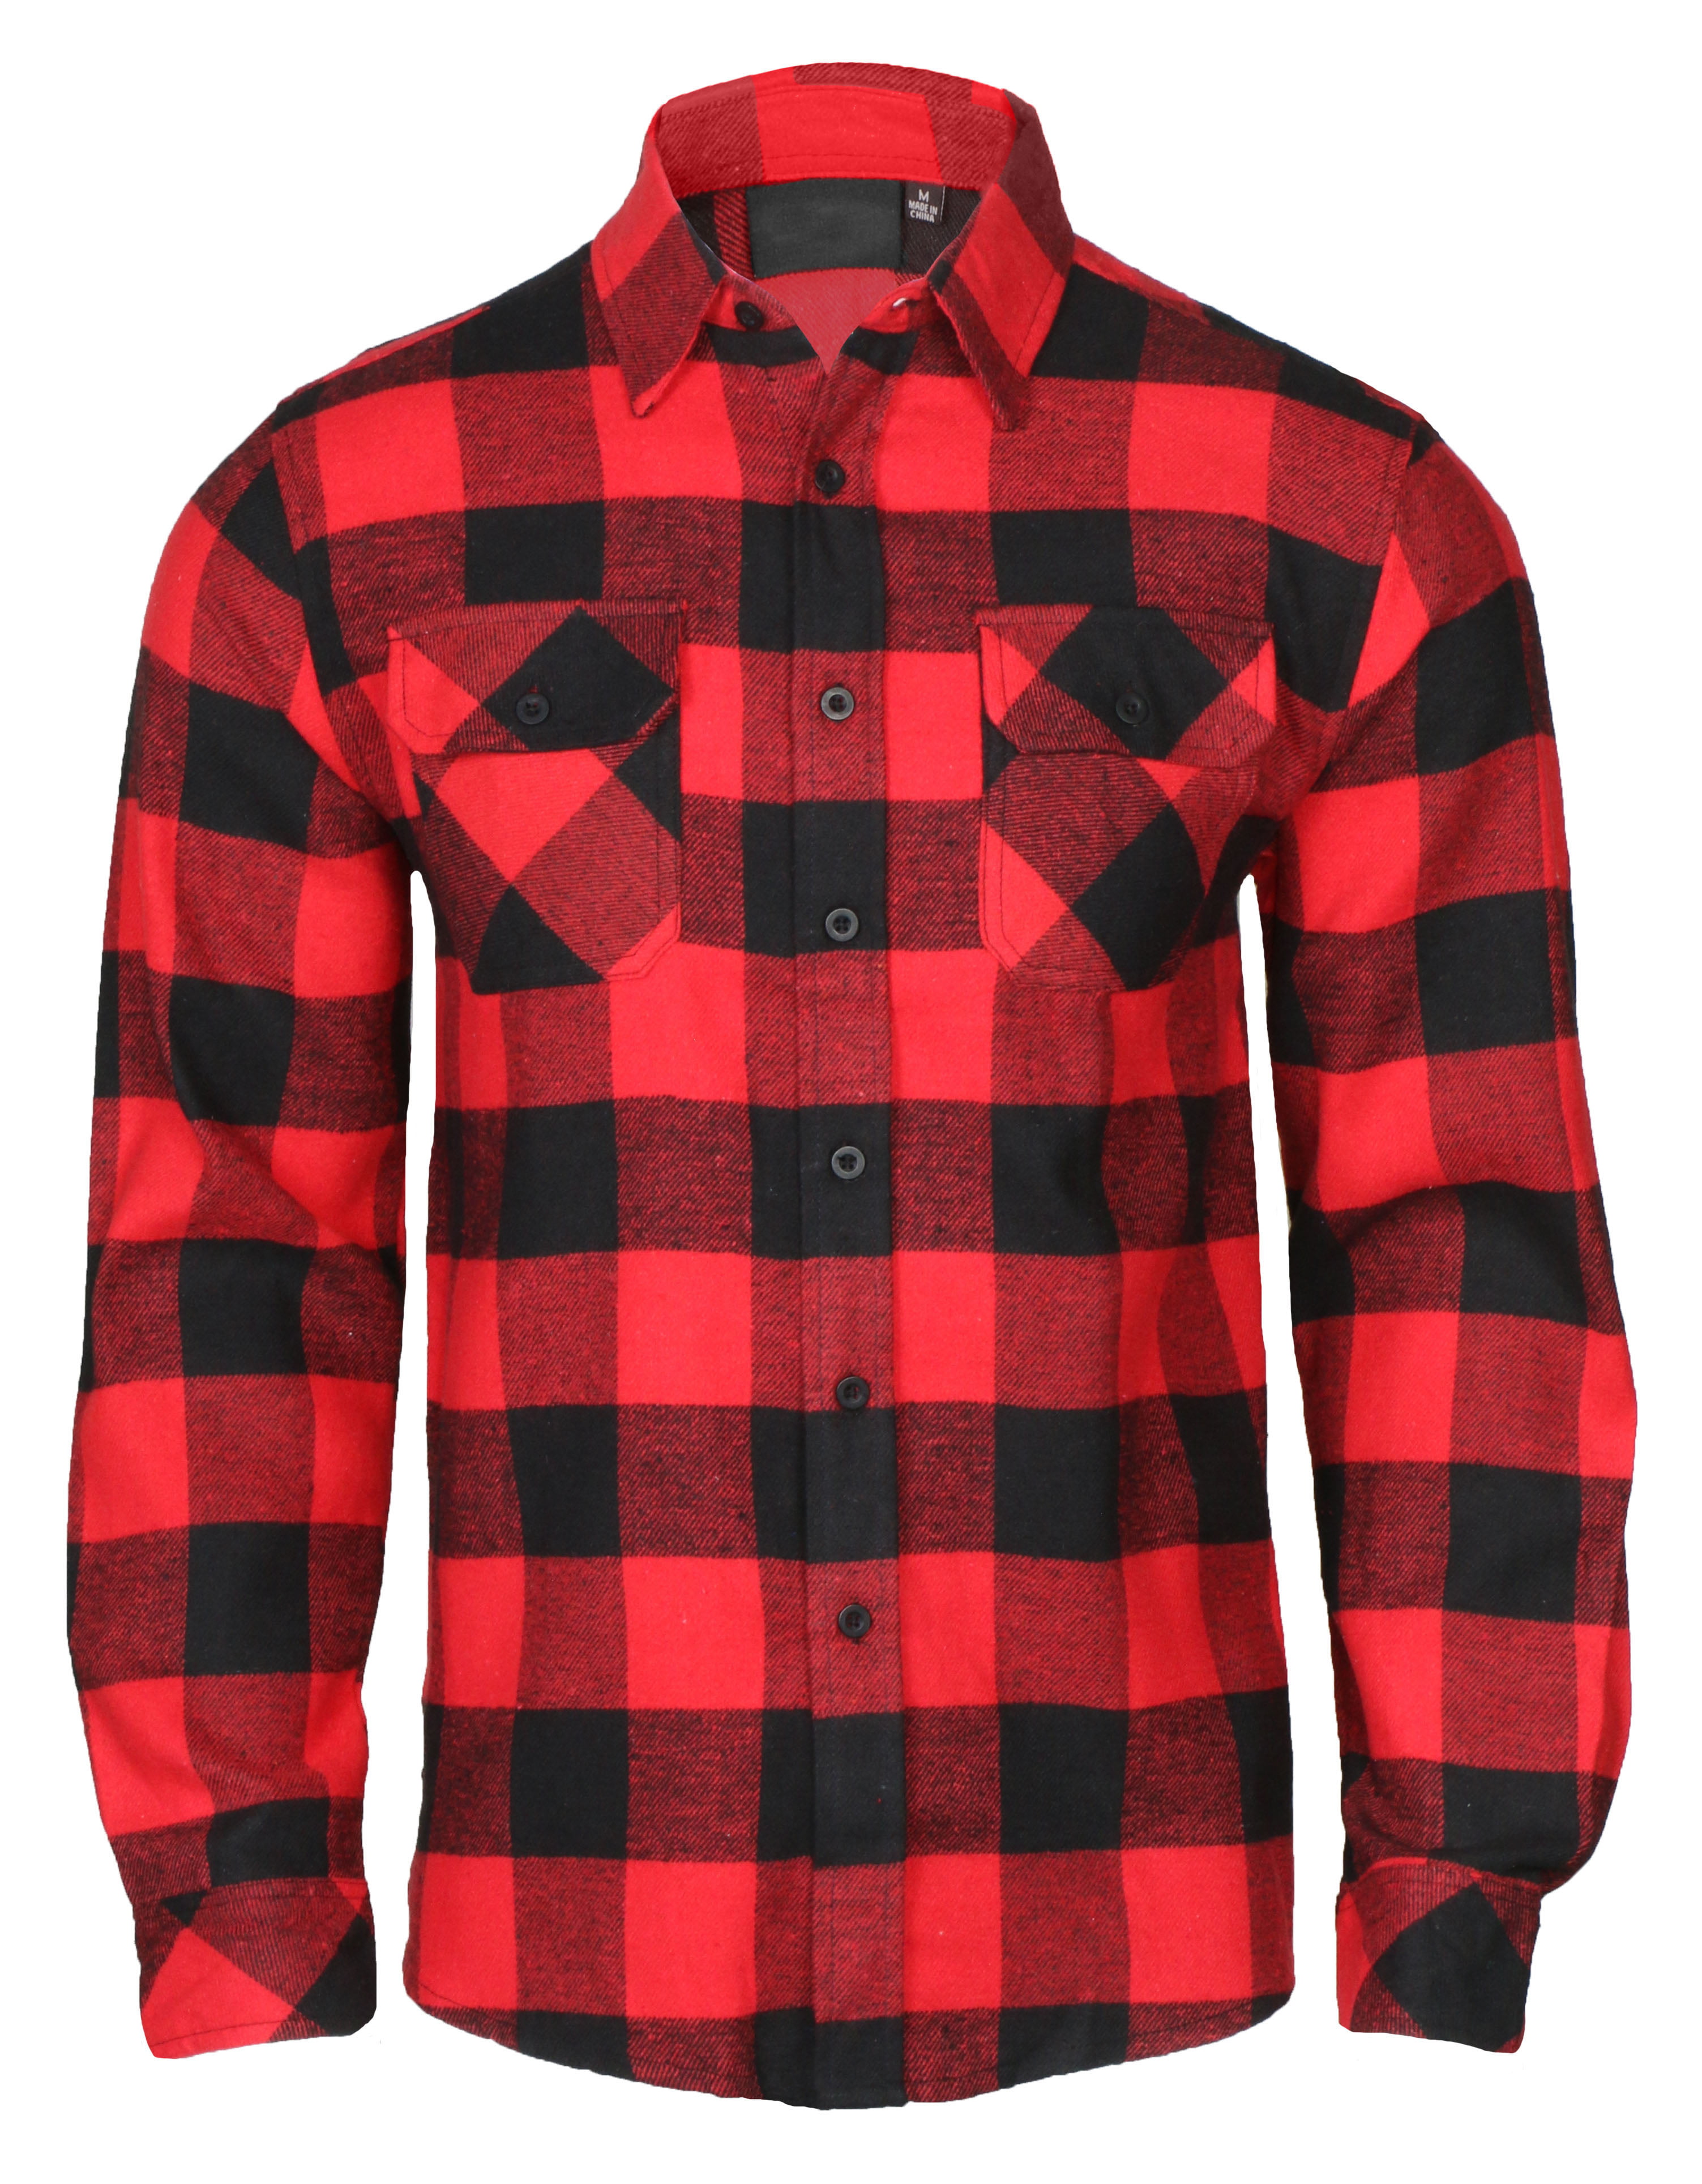 Men's Lightweight Hoodie Plaid Flannel Shirt - Walmart.com